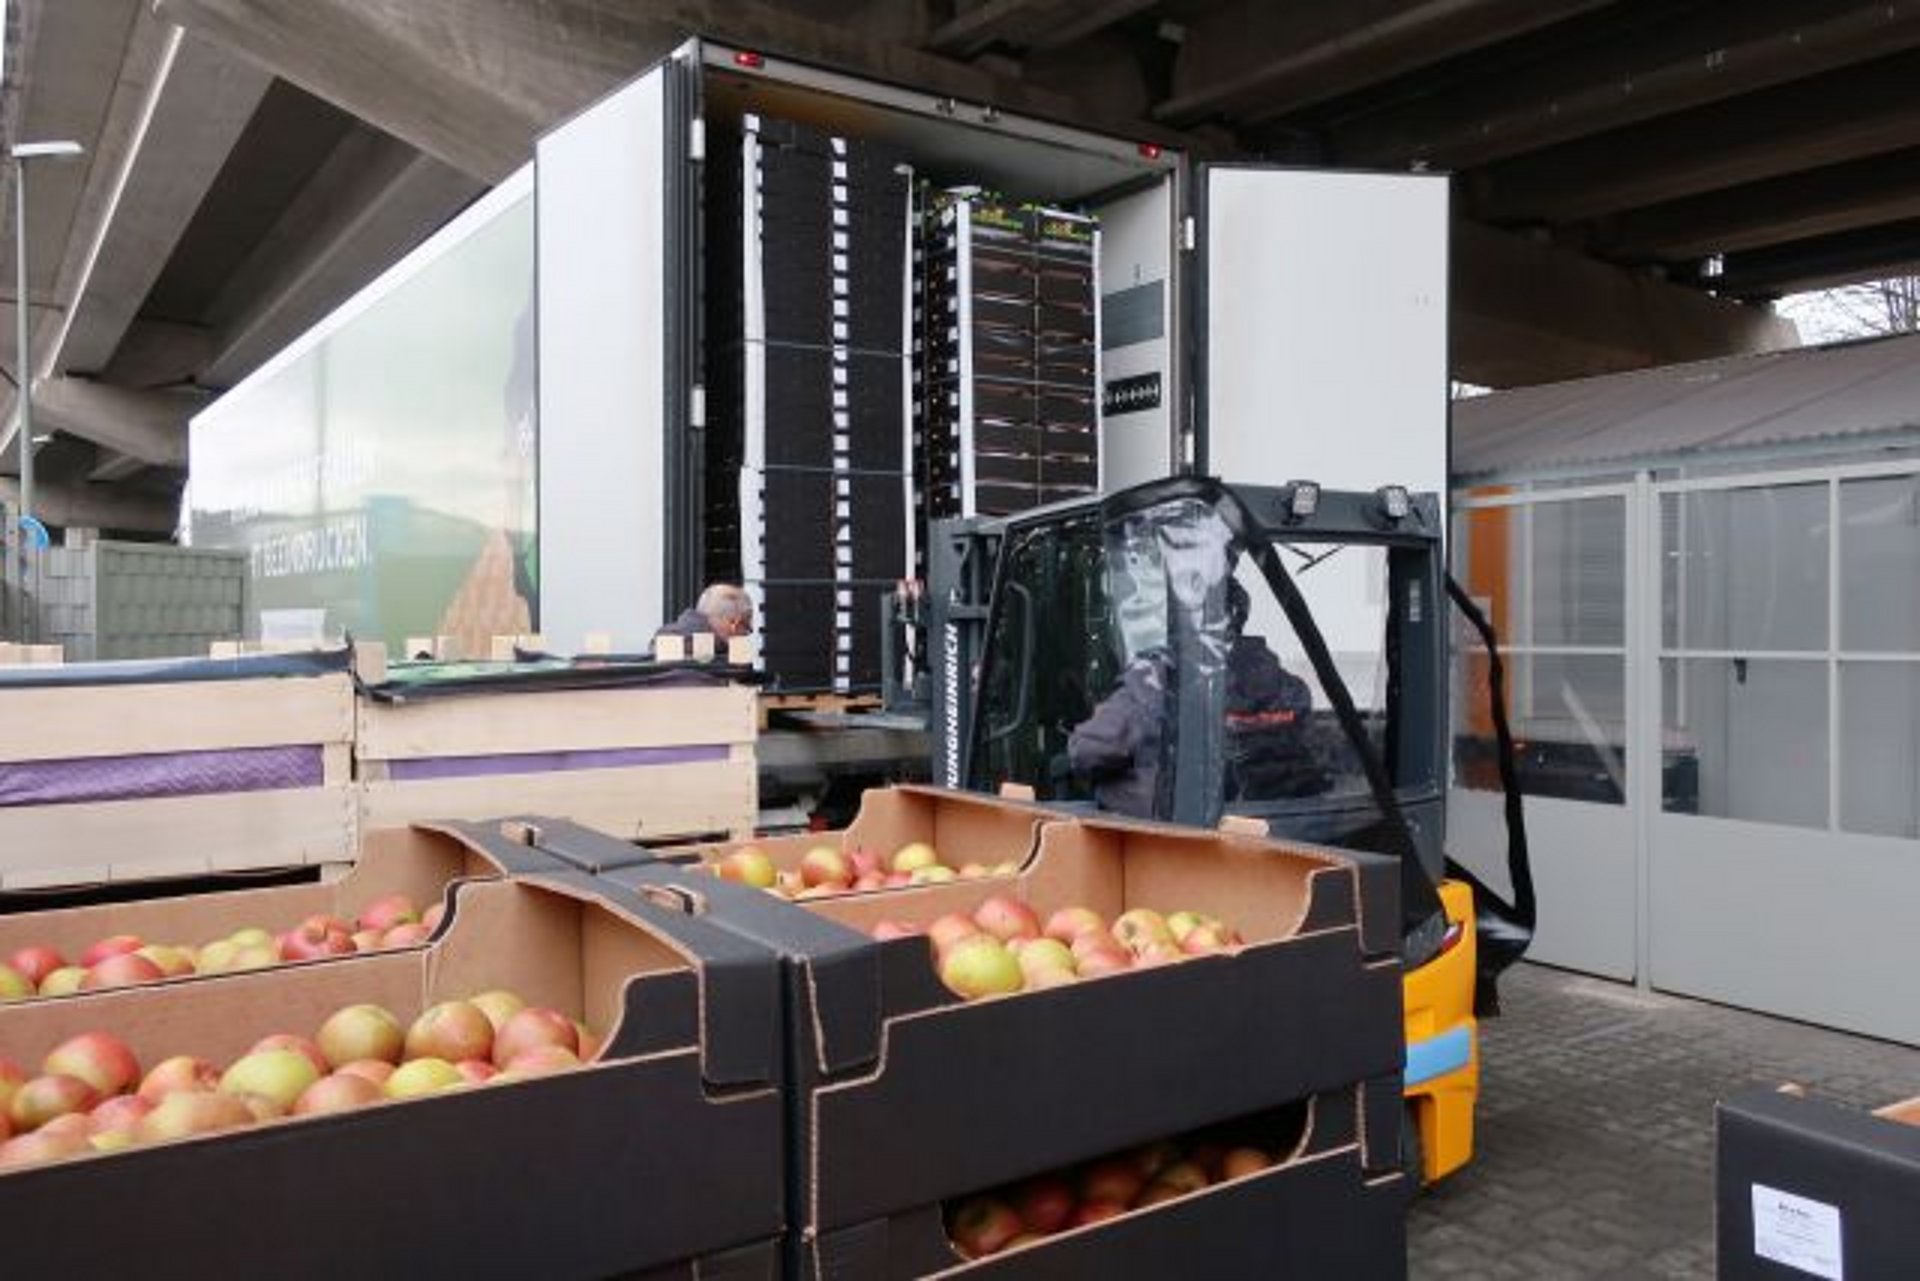 Eine Großlieferung an Lebensmitteln erfolgt mit einem LKW.